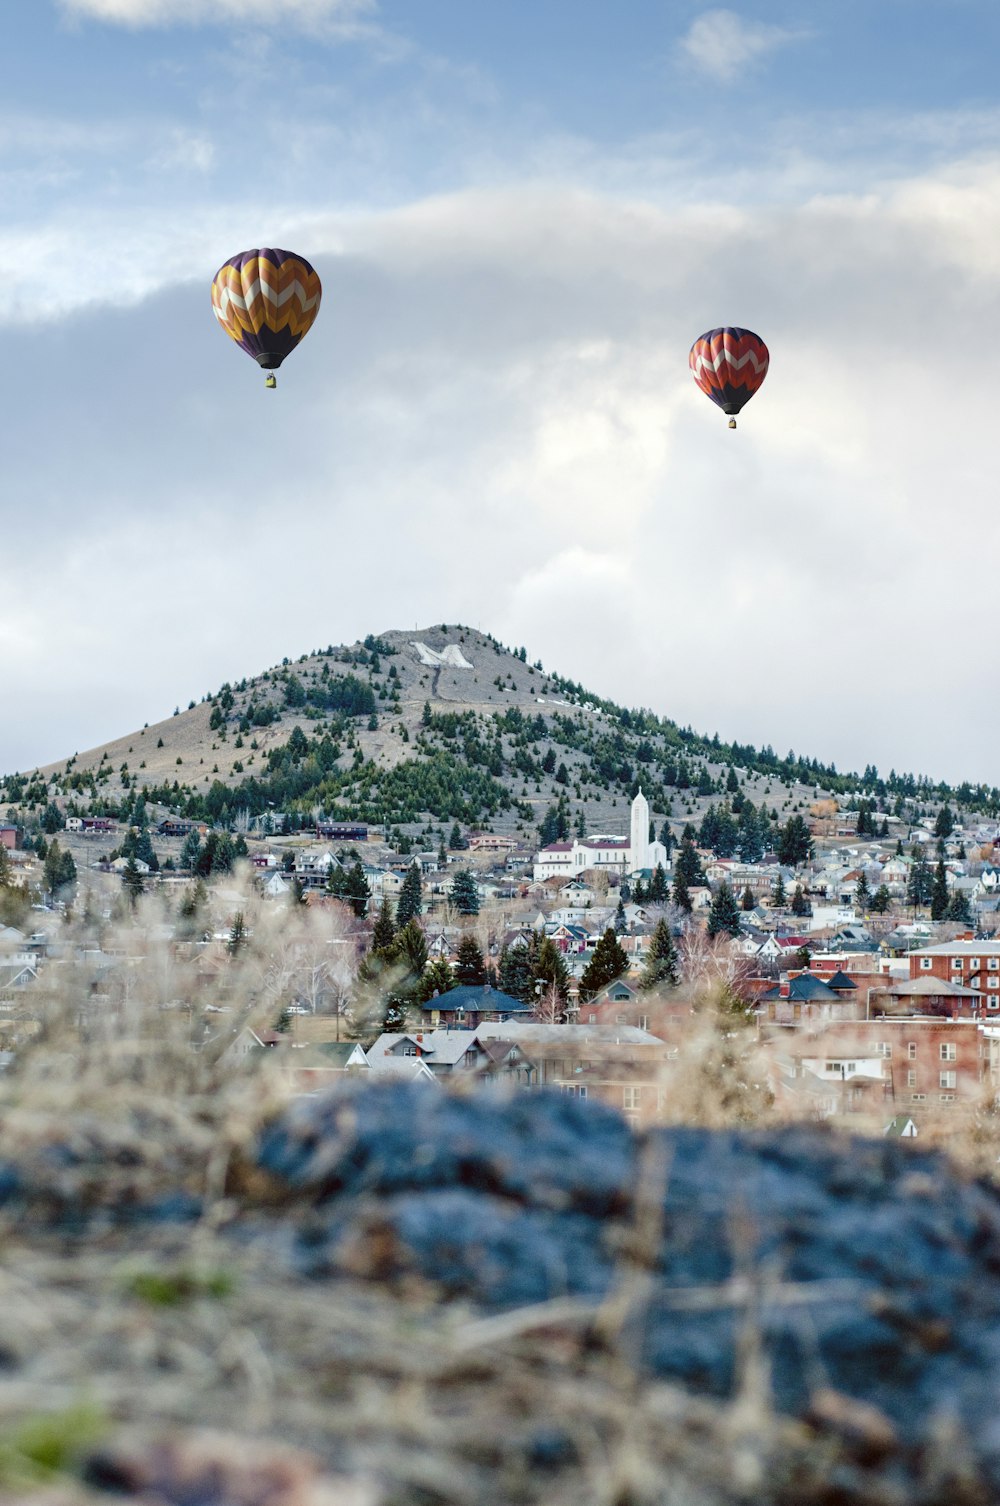 Zwei Heißluftballons in verschiedenen Farben sind tagsüber in der Nähe des Berges unterwegs